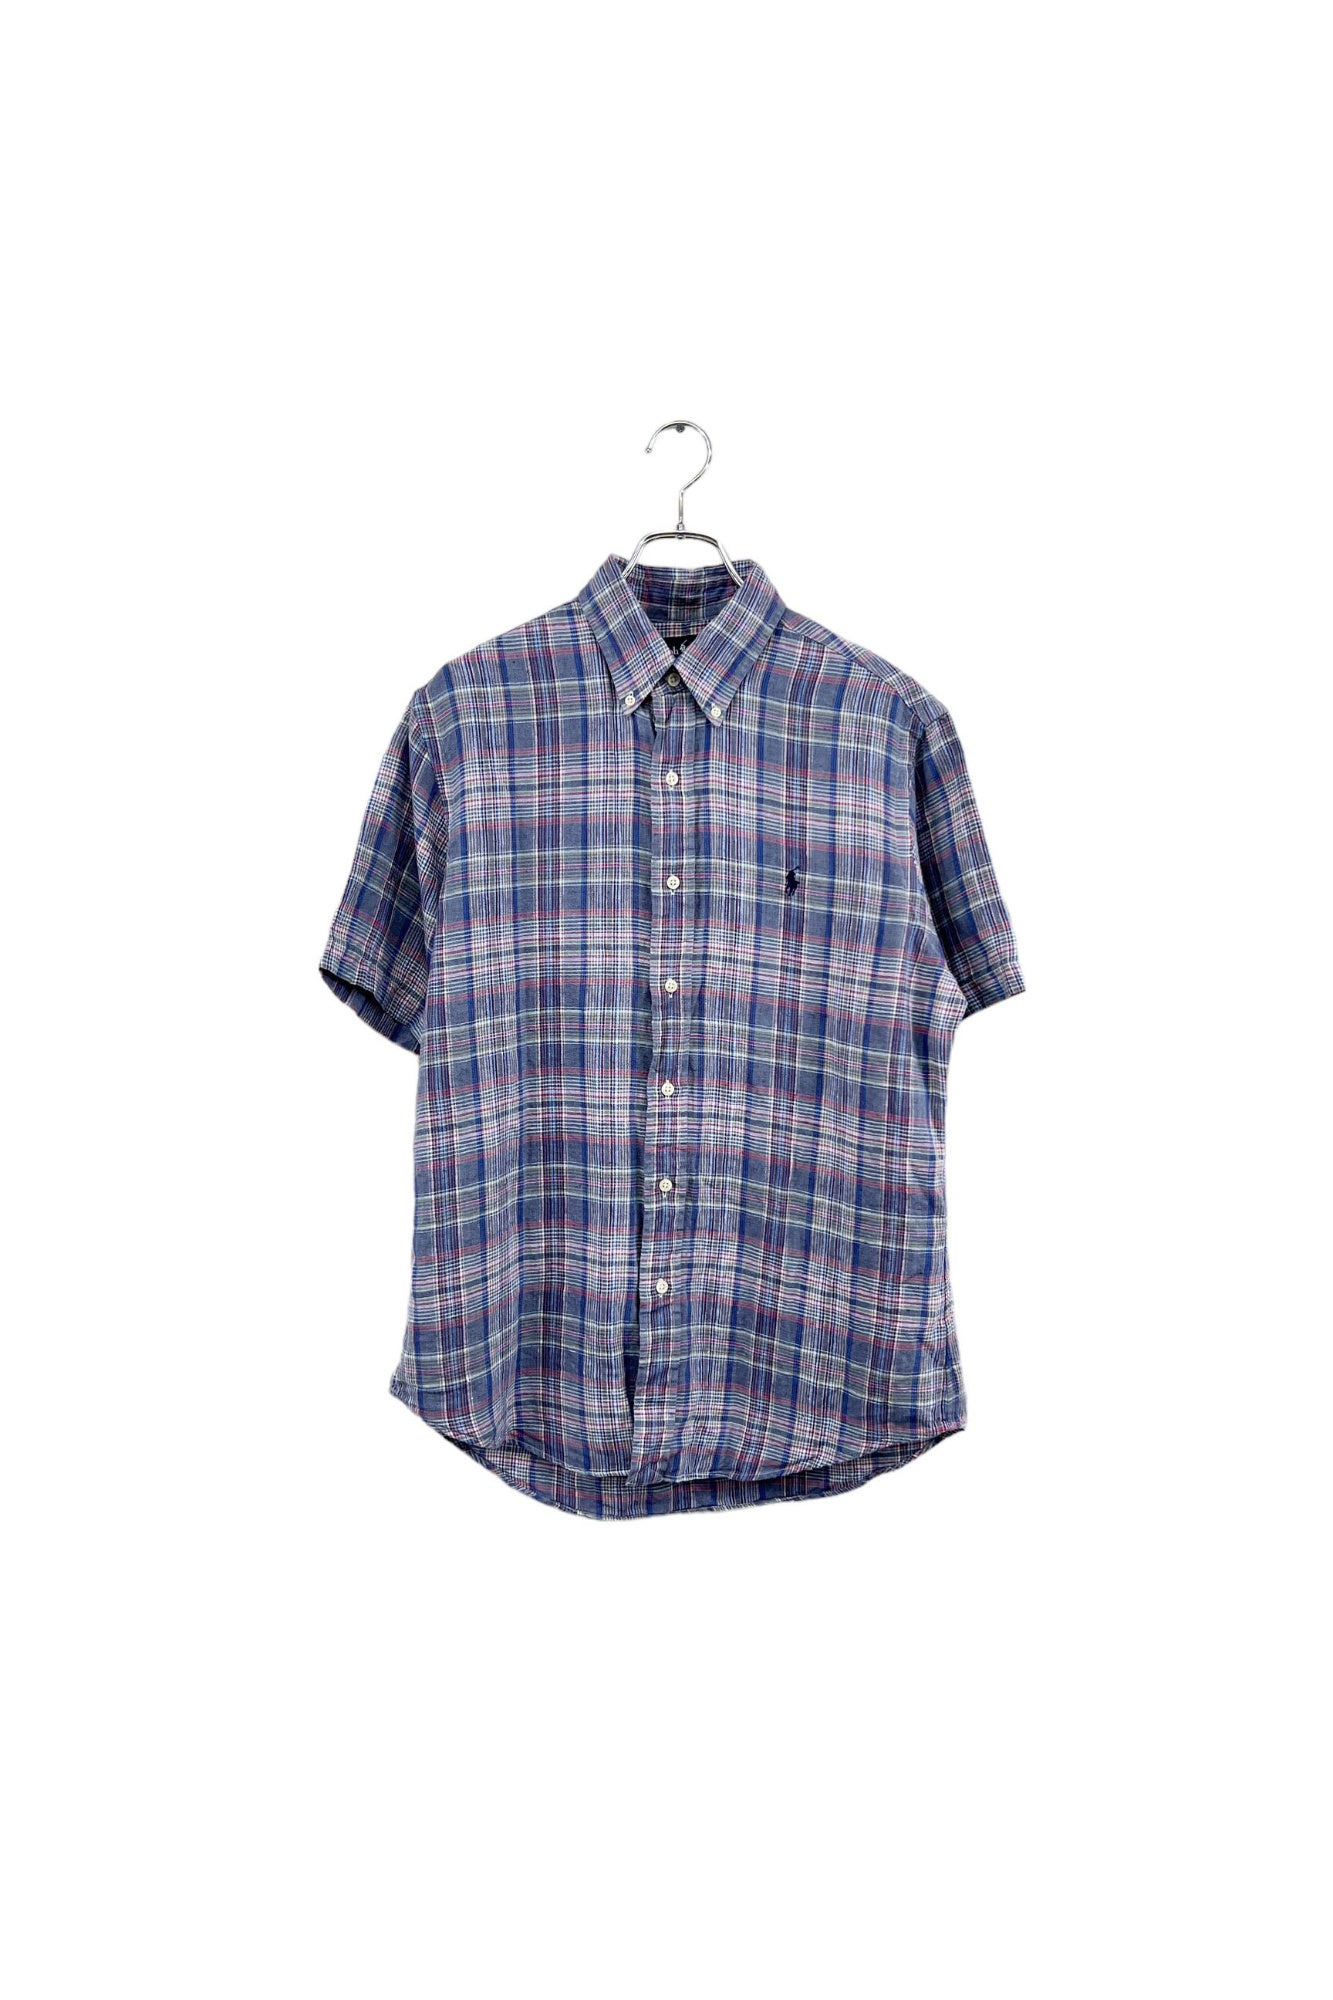 90s Ralph Lauren linen check shirt